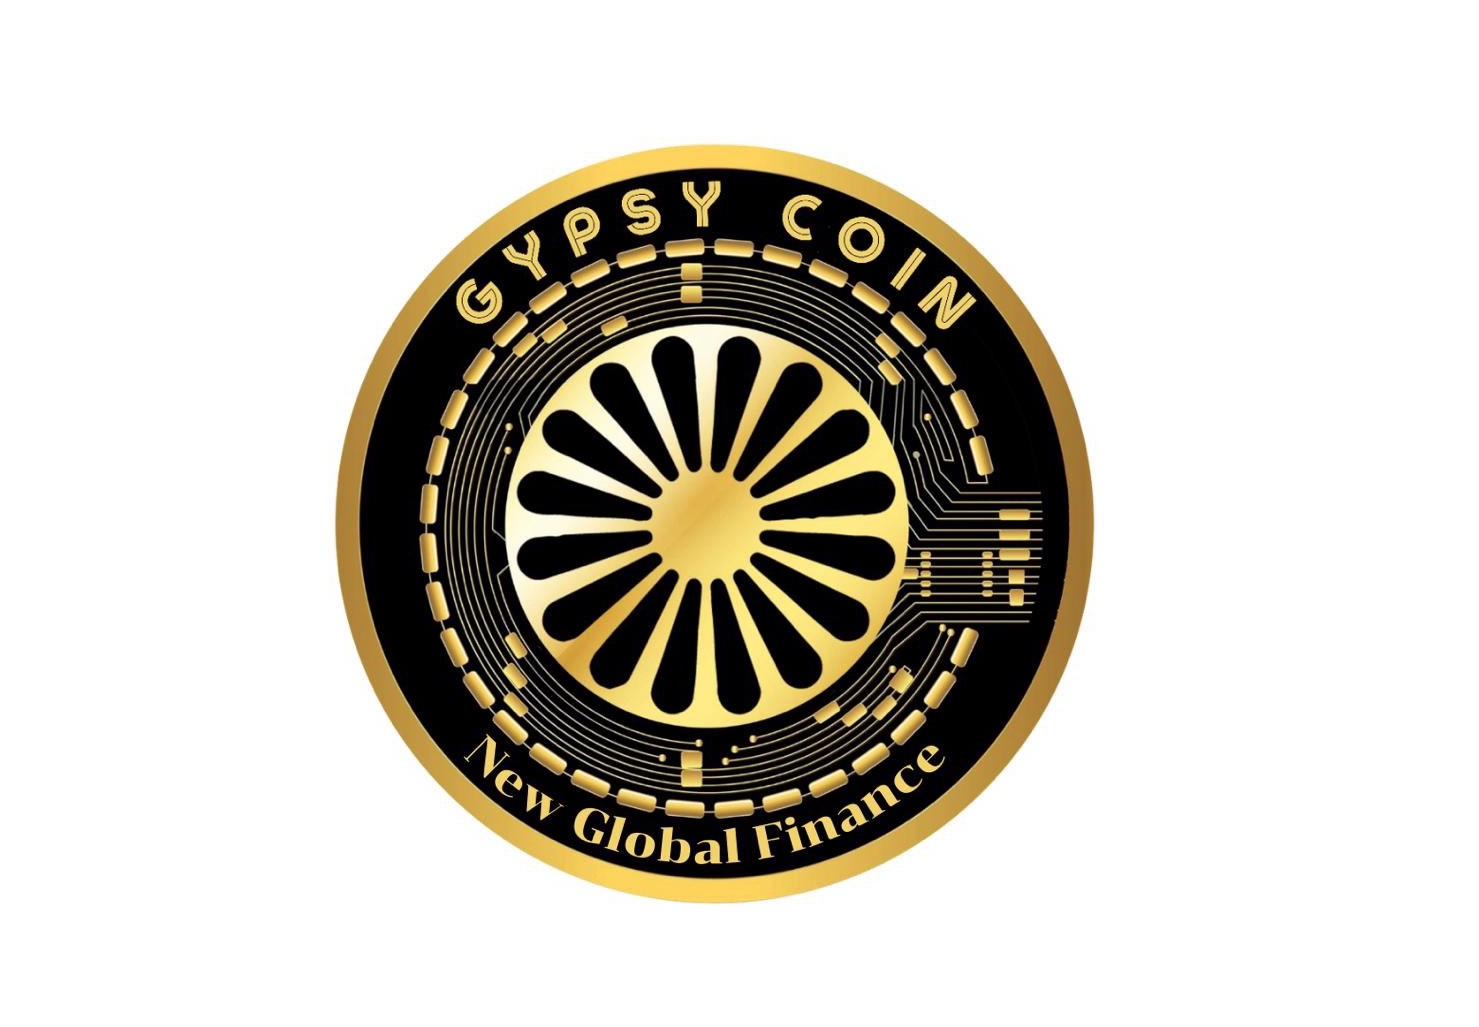 Gypsycoin – Romii și-au făcut criptomonedă. ”Moneda a avut o creştere de 1.000%, în doar o săptămână”